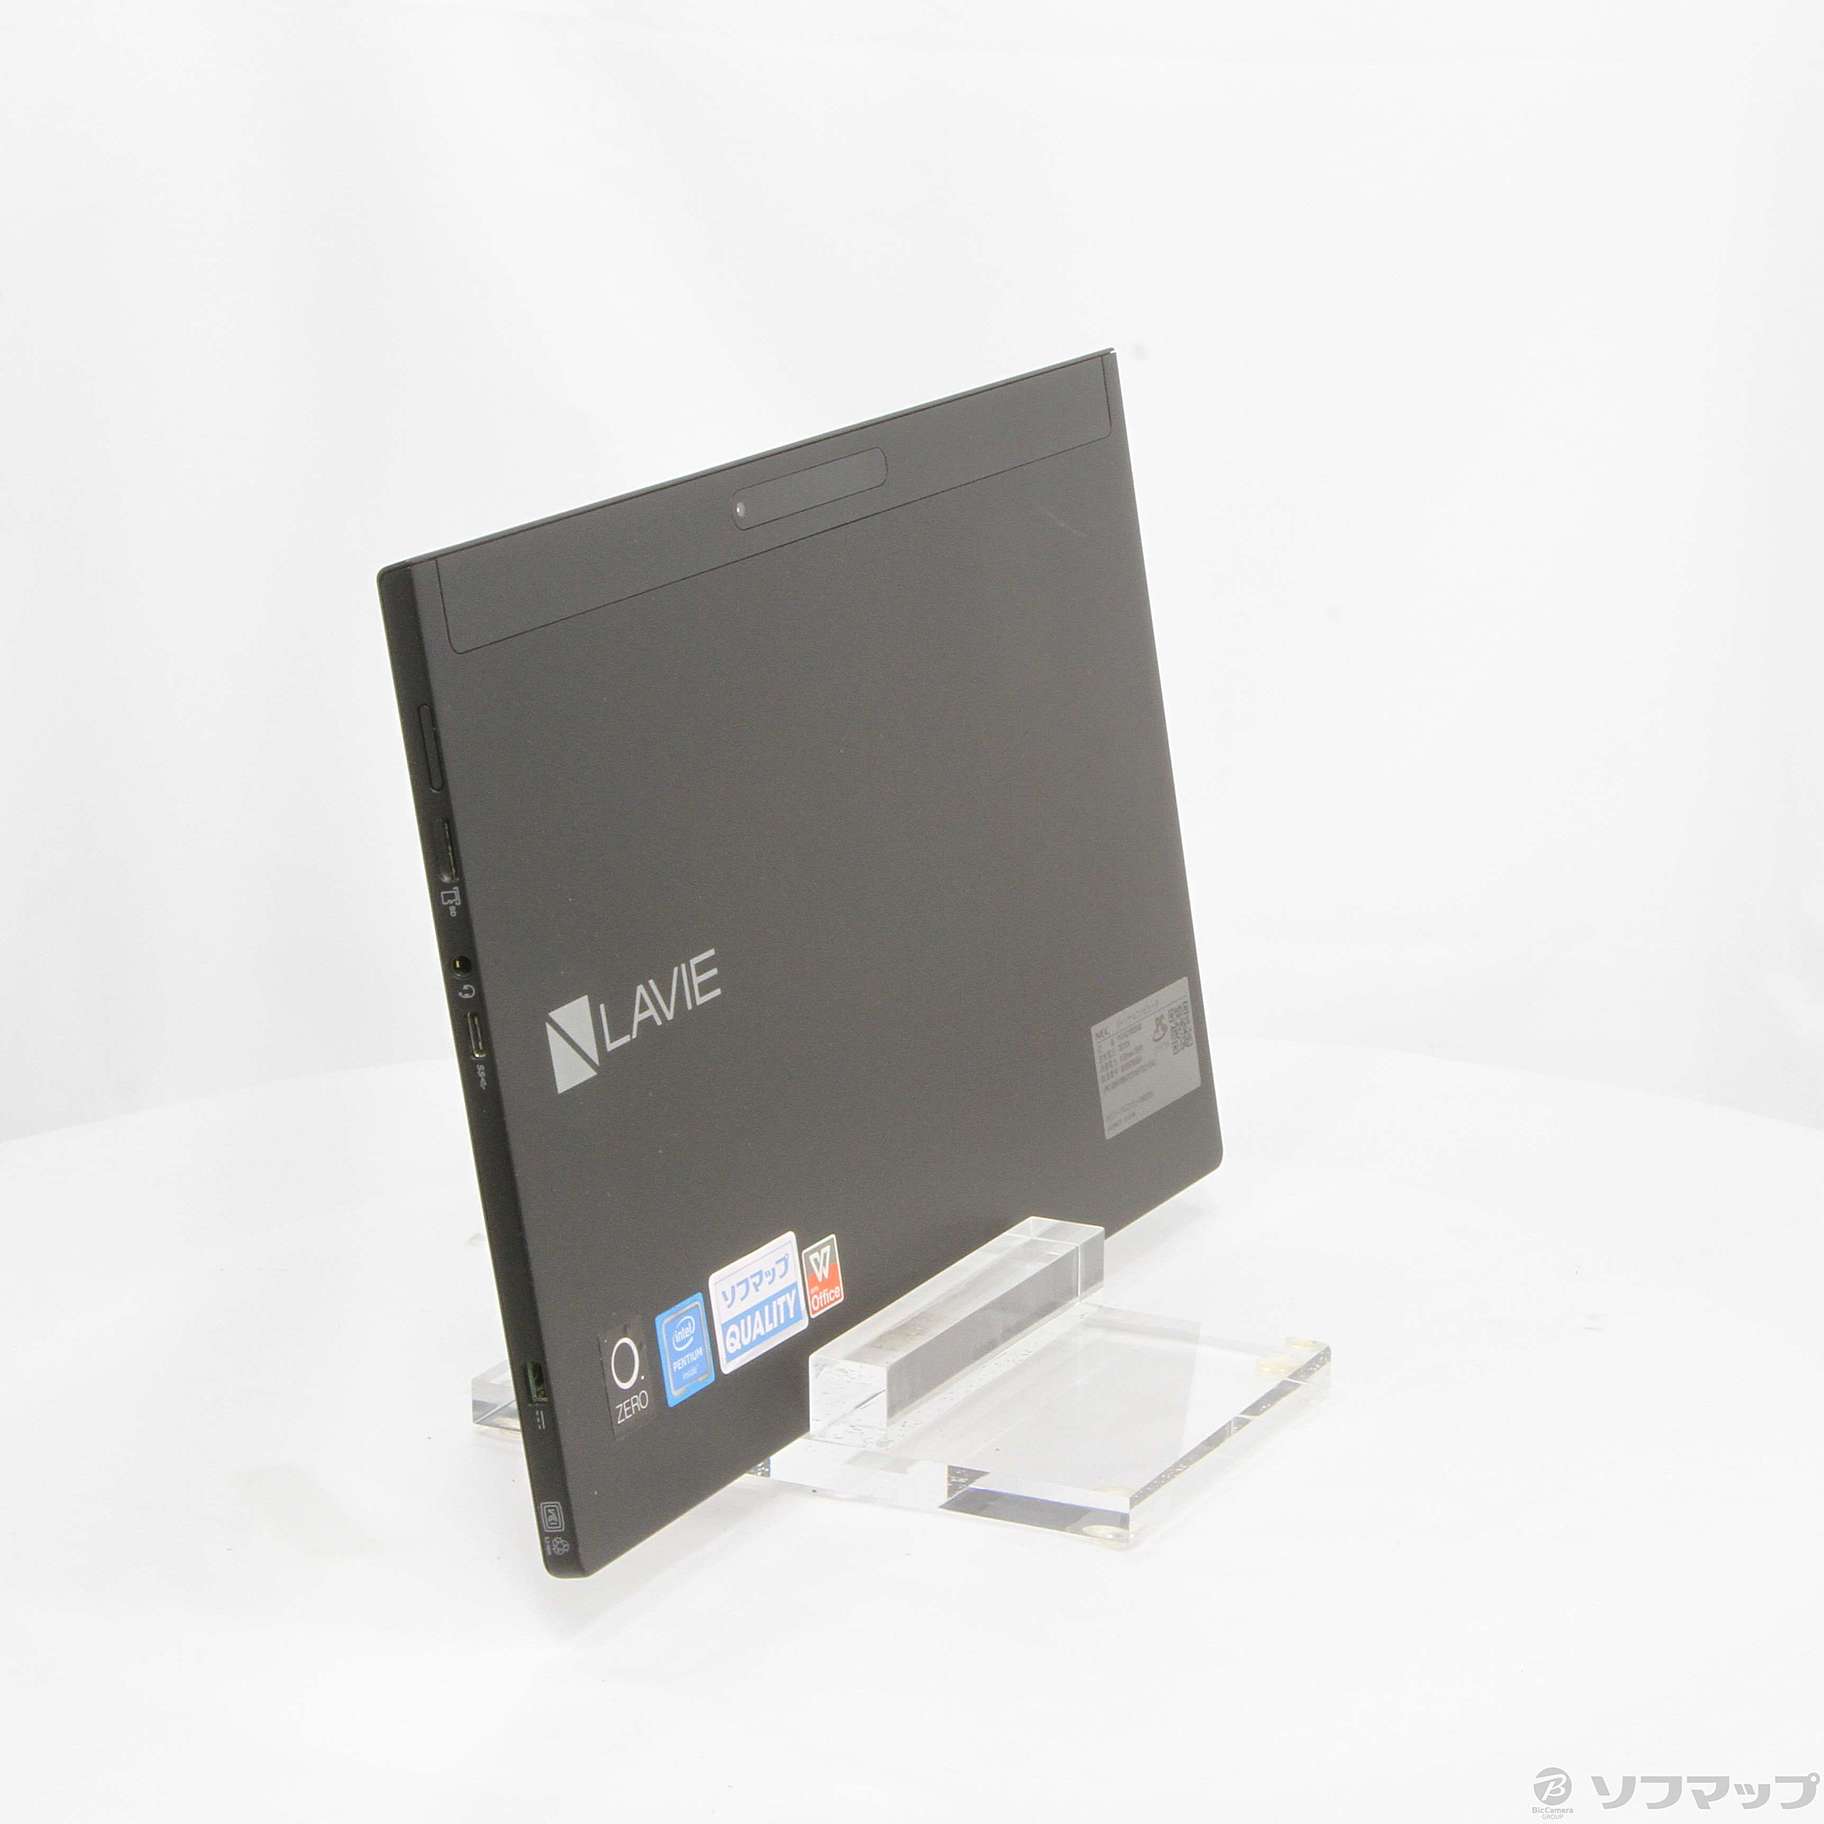 セール対象品 LAVIE Hybrid ZERO PC-HZ100DAB ストームブラック 〔Windows 10〕